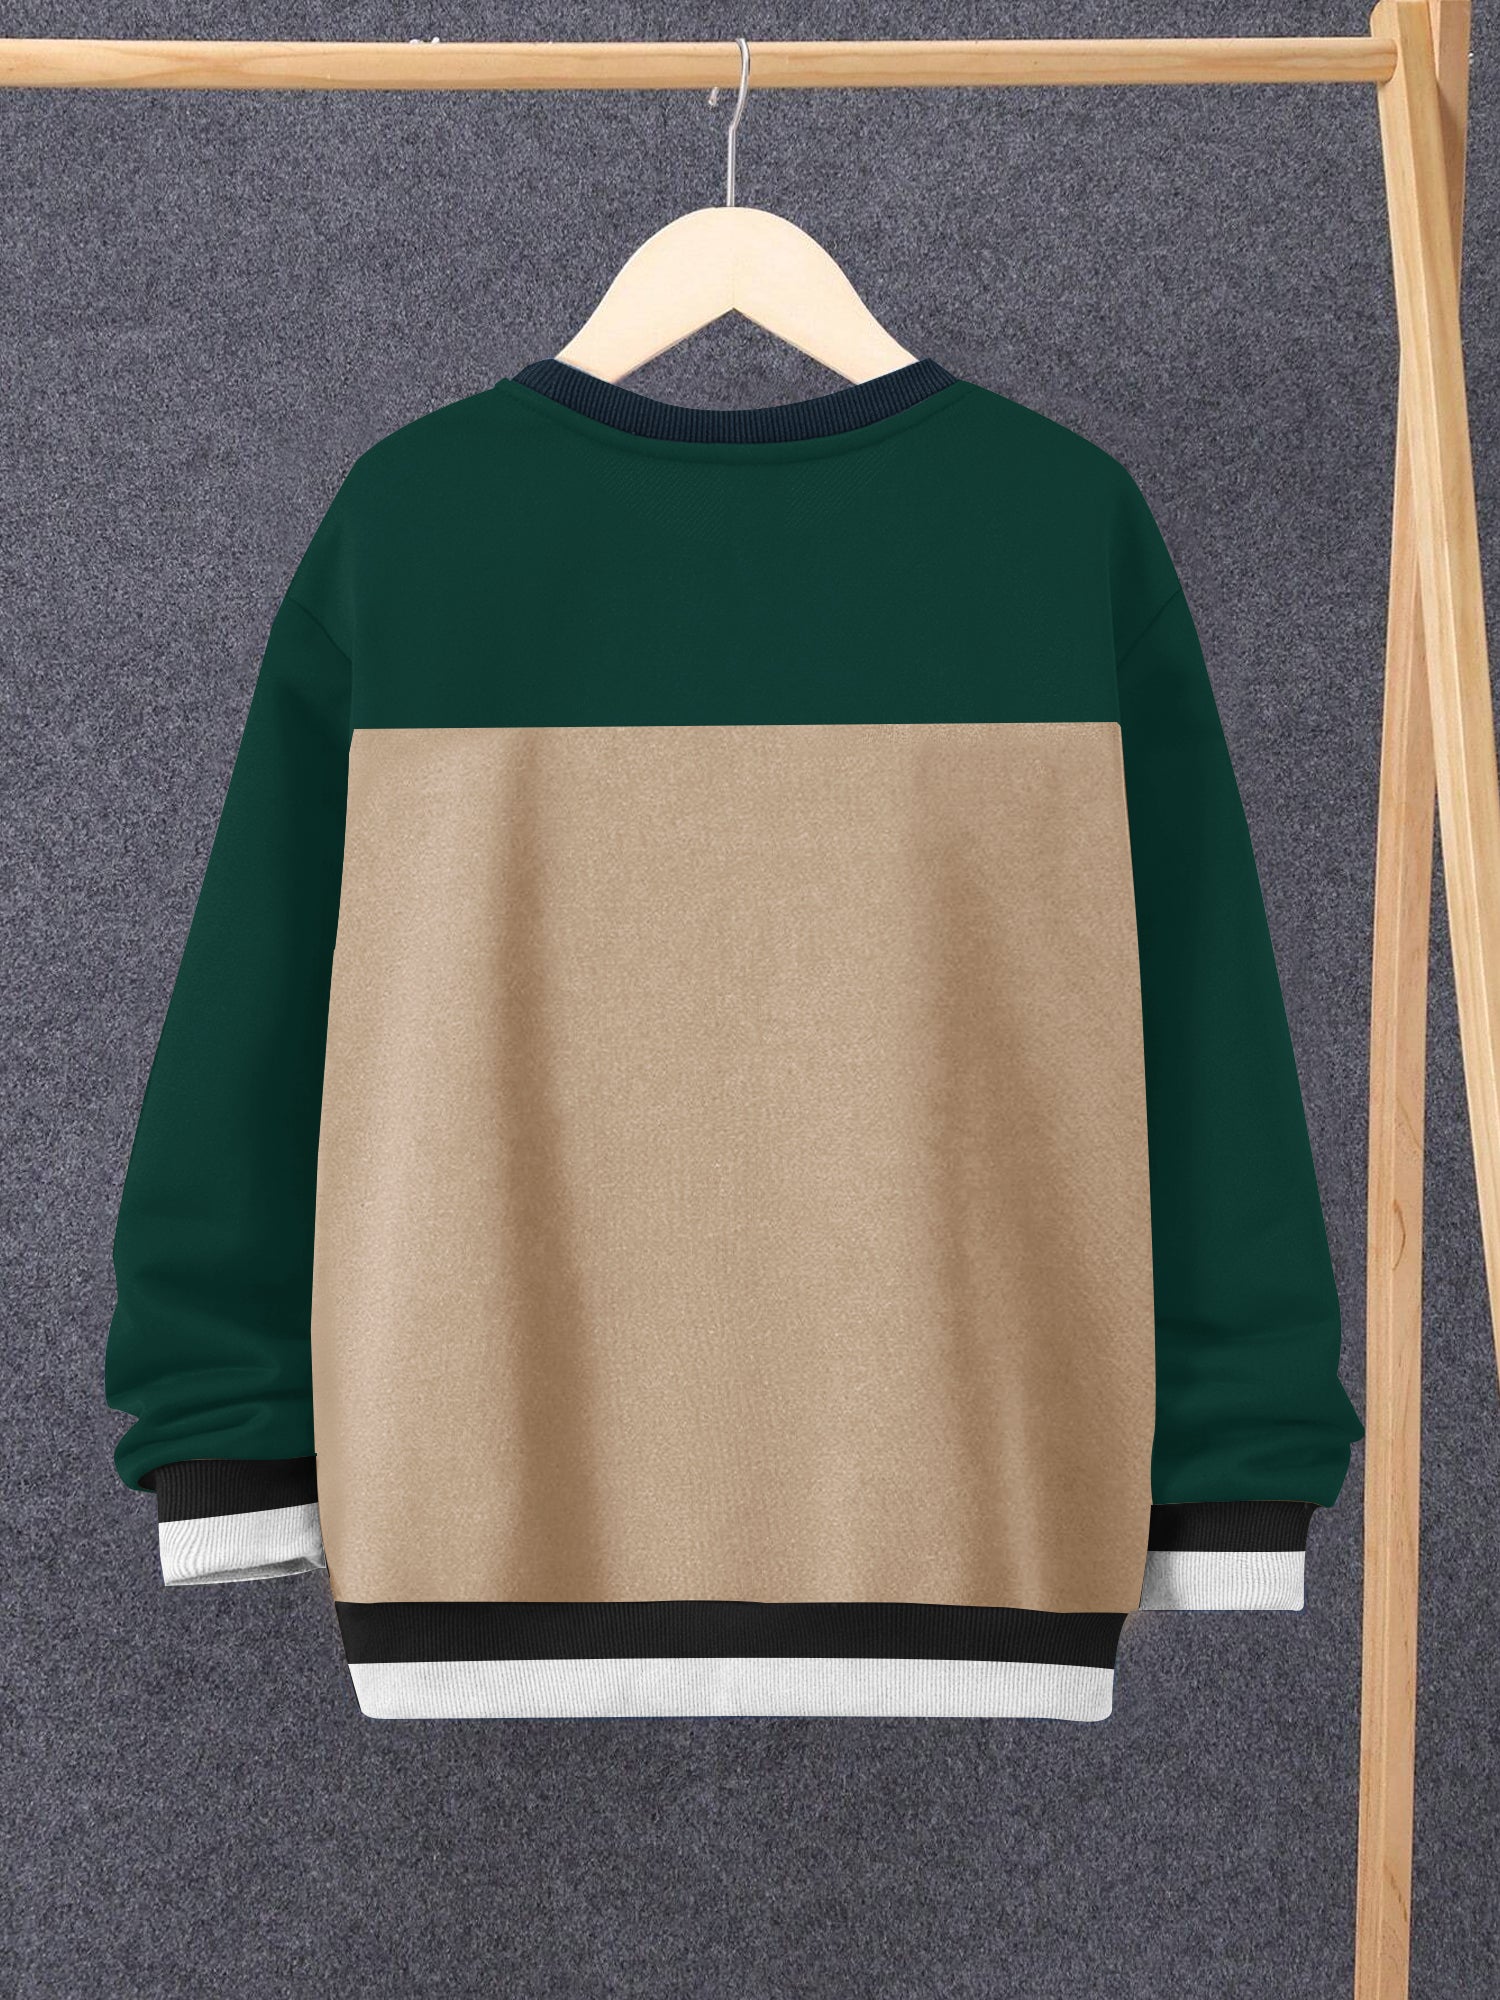 Louis Vicaci Fleece Sweatshirt For Kids-Camel & Dark Green-SP1487/RT2347